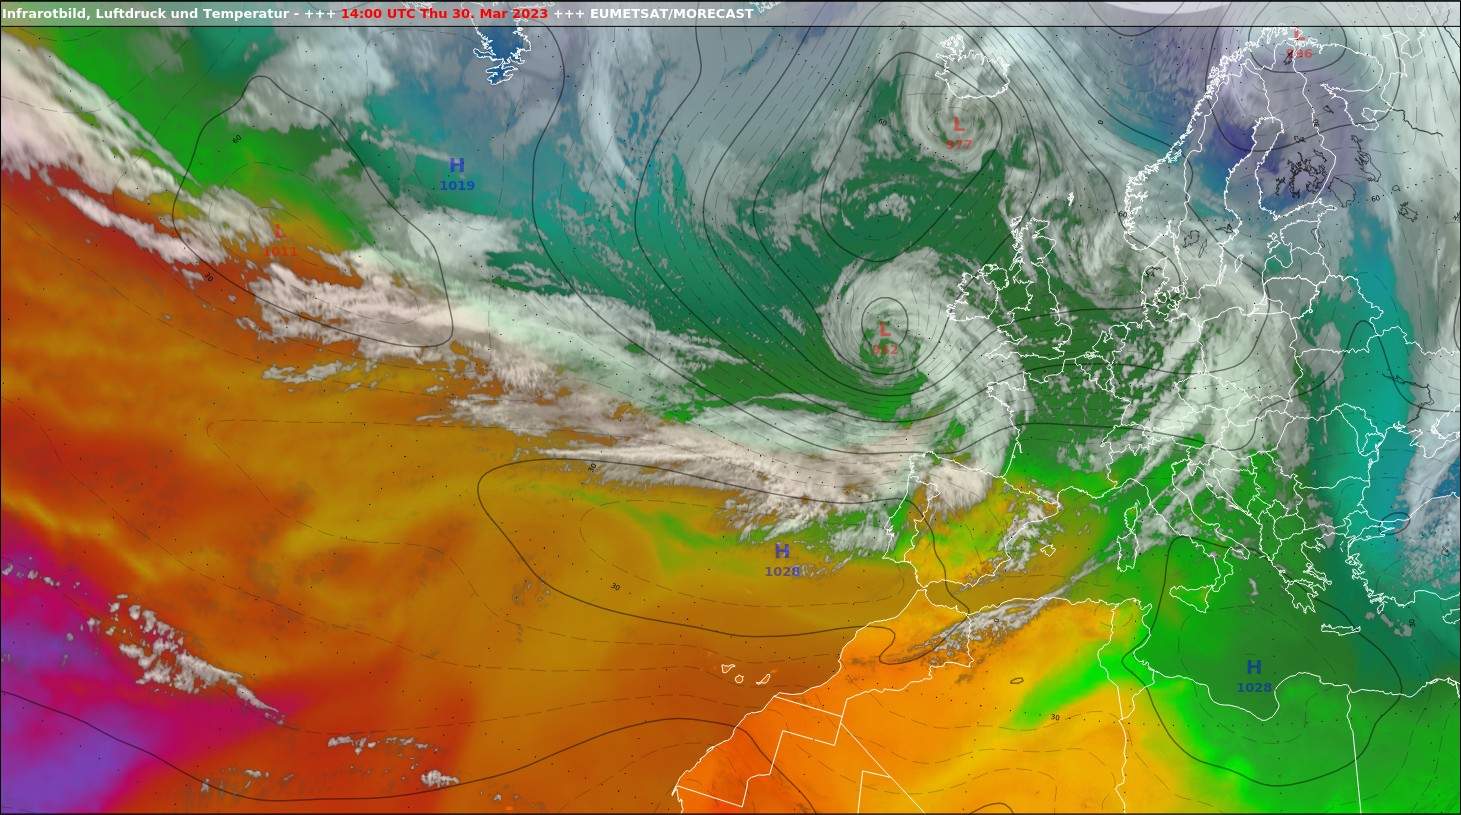 Fig. 1: Ci-dessus la tempête Mathis le jeudi 30 mars à 16h; Source: EUMETSAT, présentation par UBIMET